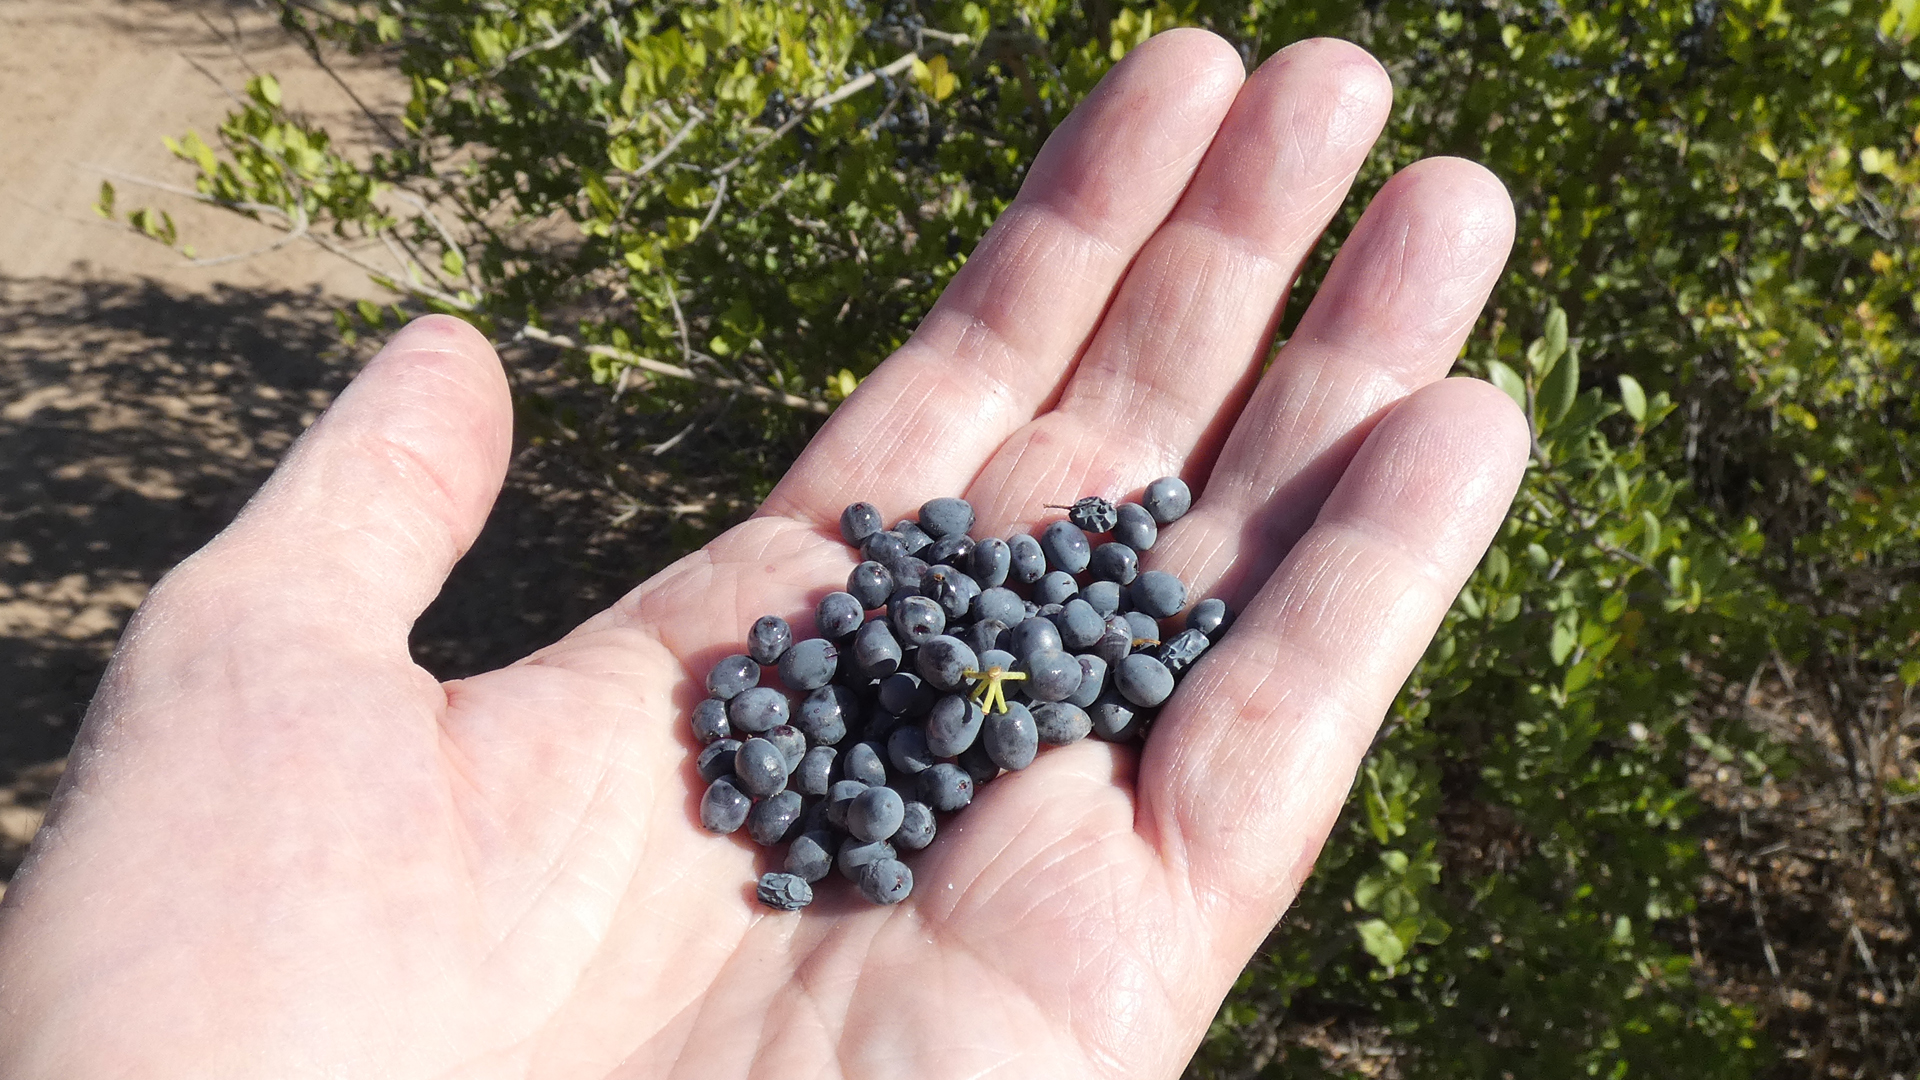 Fruit, Rio Grande Bosque, Albuquerque, September 2021